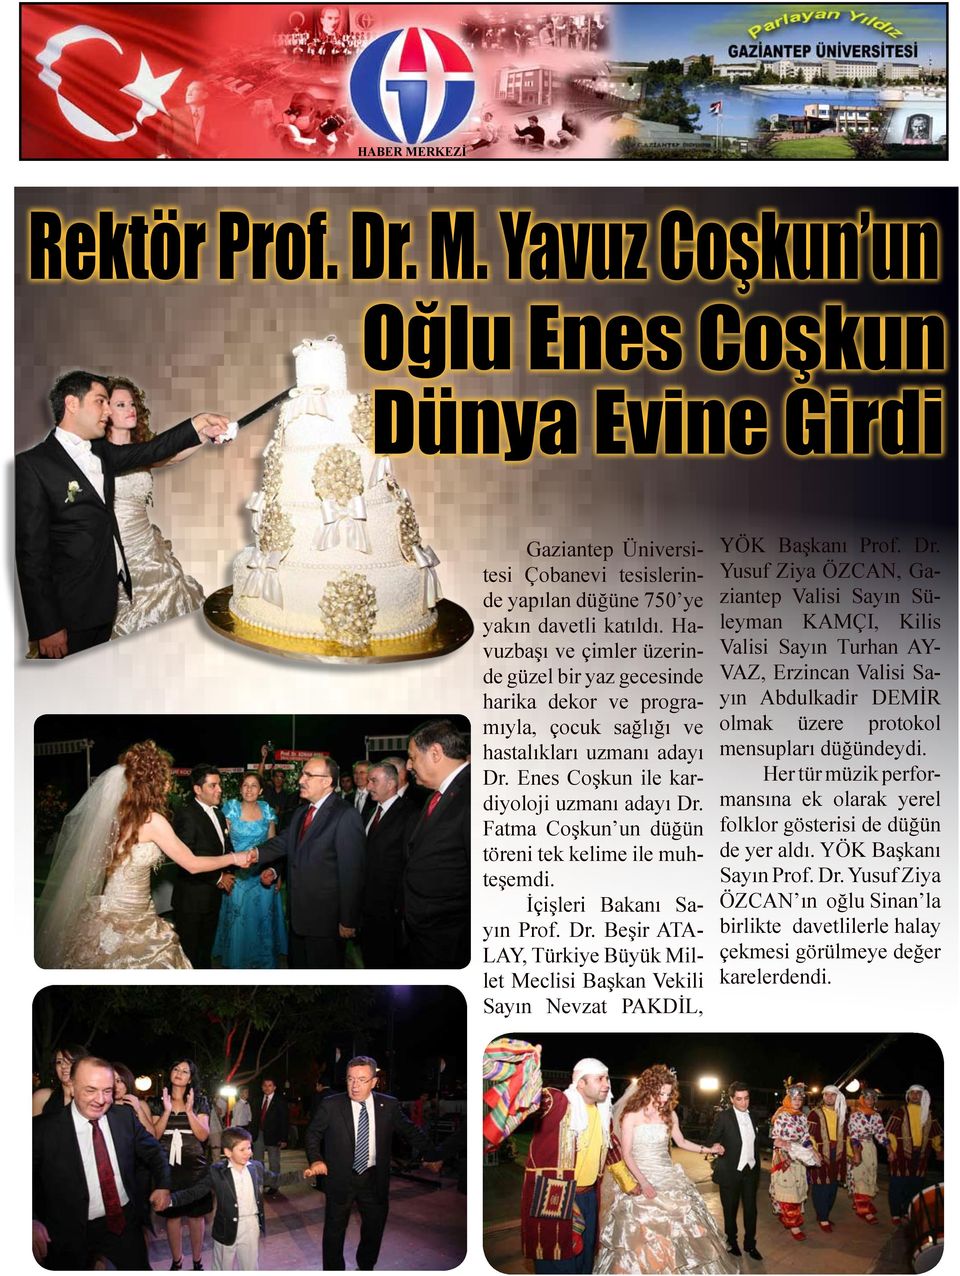 Fatma Coşkun un düğün töreni tek kelime ile muhteşemdi. İçişleri Bakanı Sayın Prof. Dr.